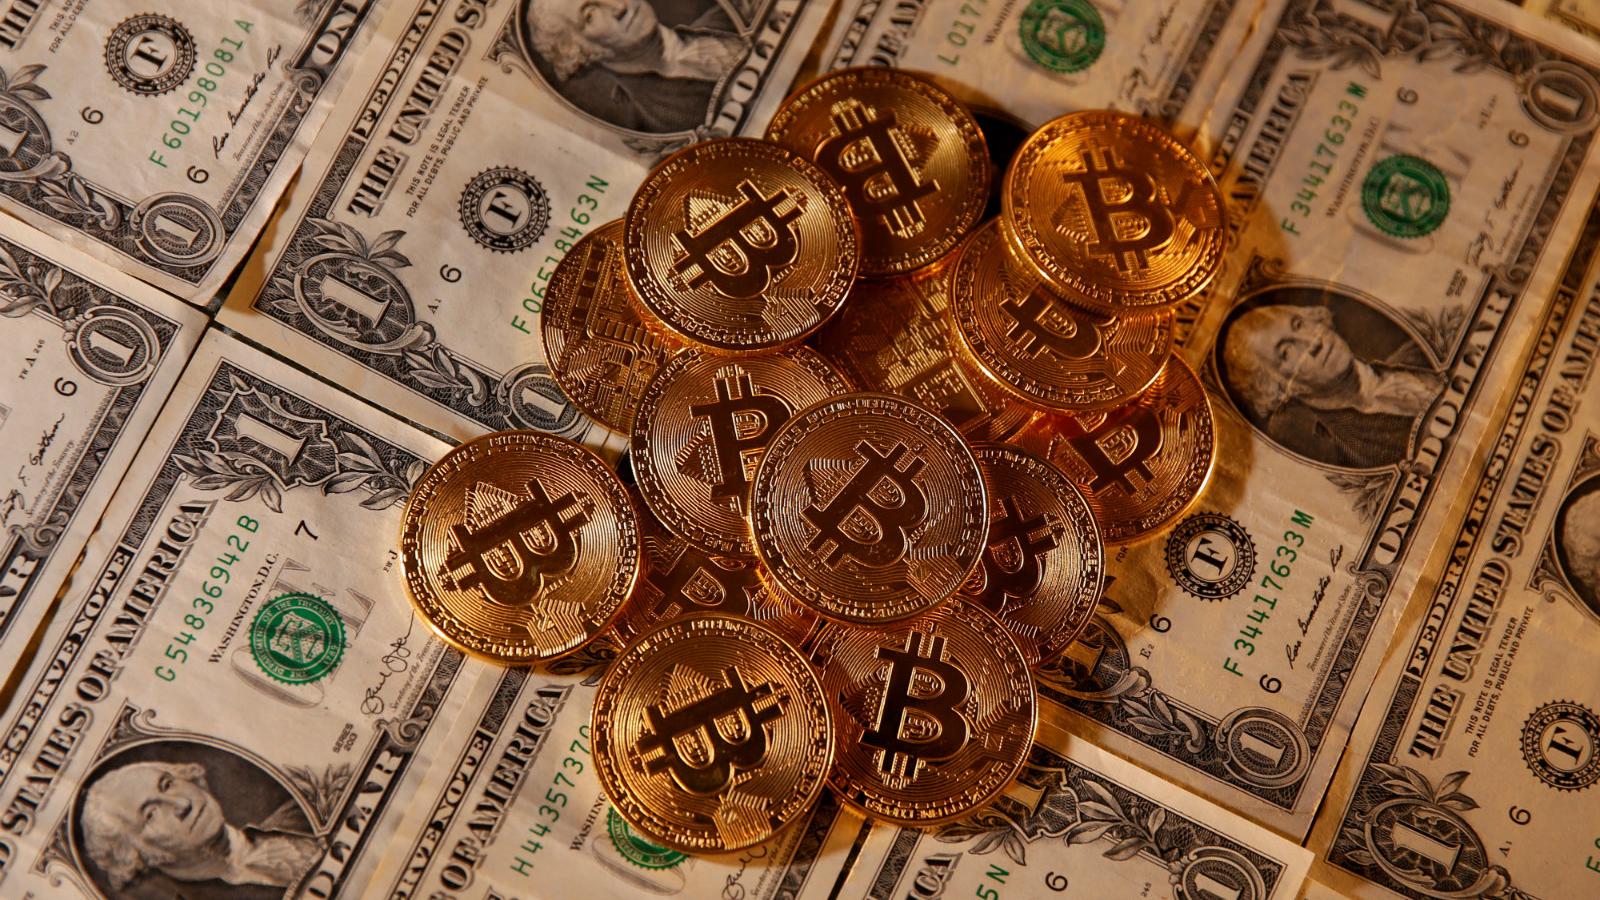 Drittes Bitcoin Halving im Mai 2020: Angebotsverknappung in Zeiten schier endloser Geldflut